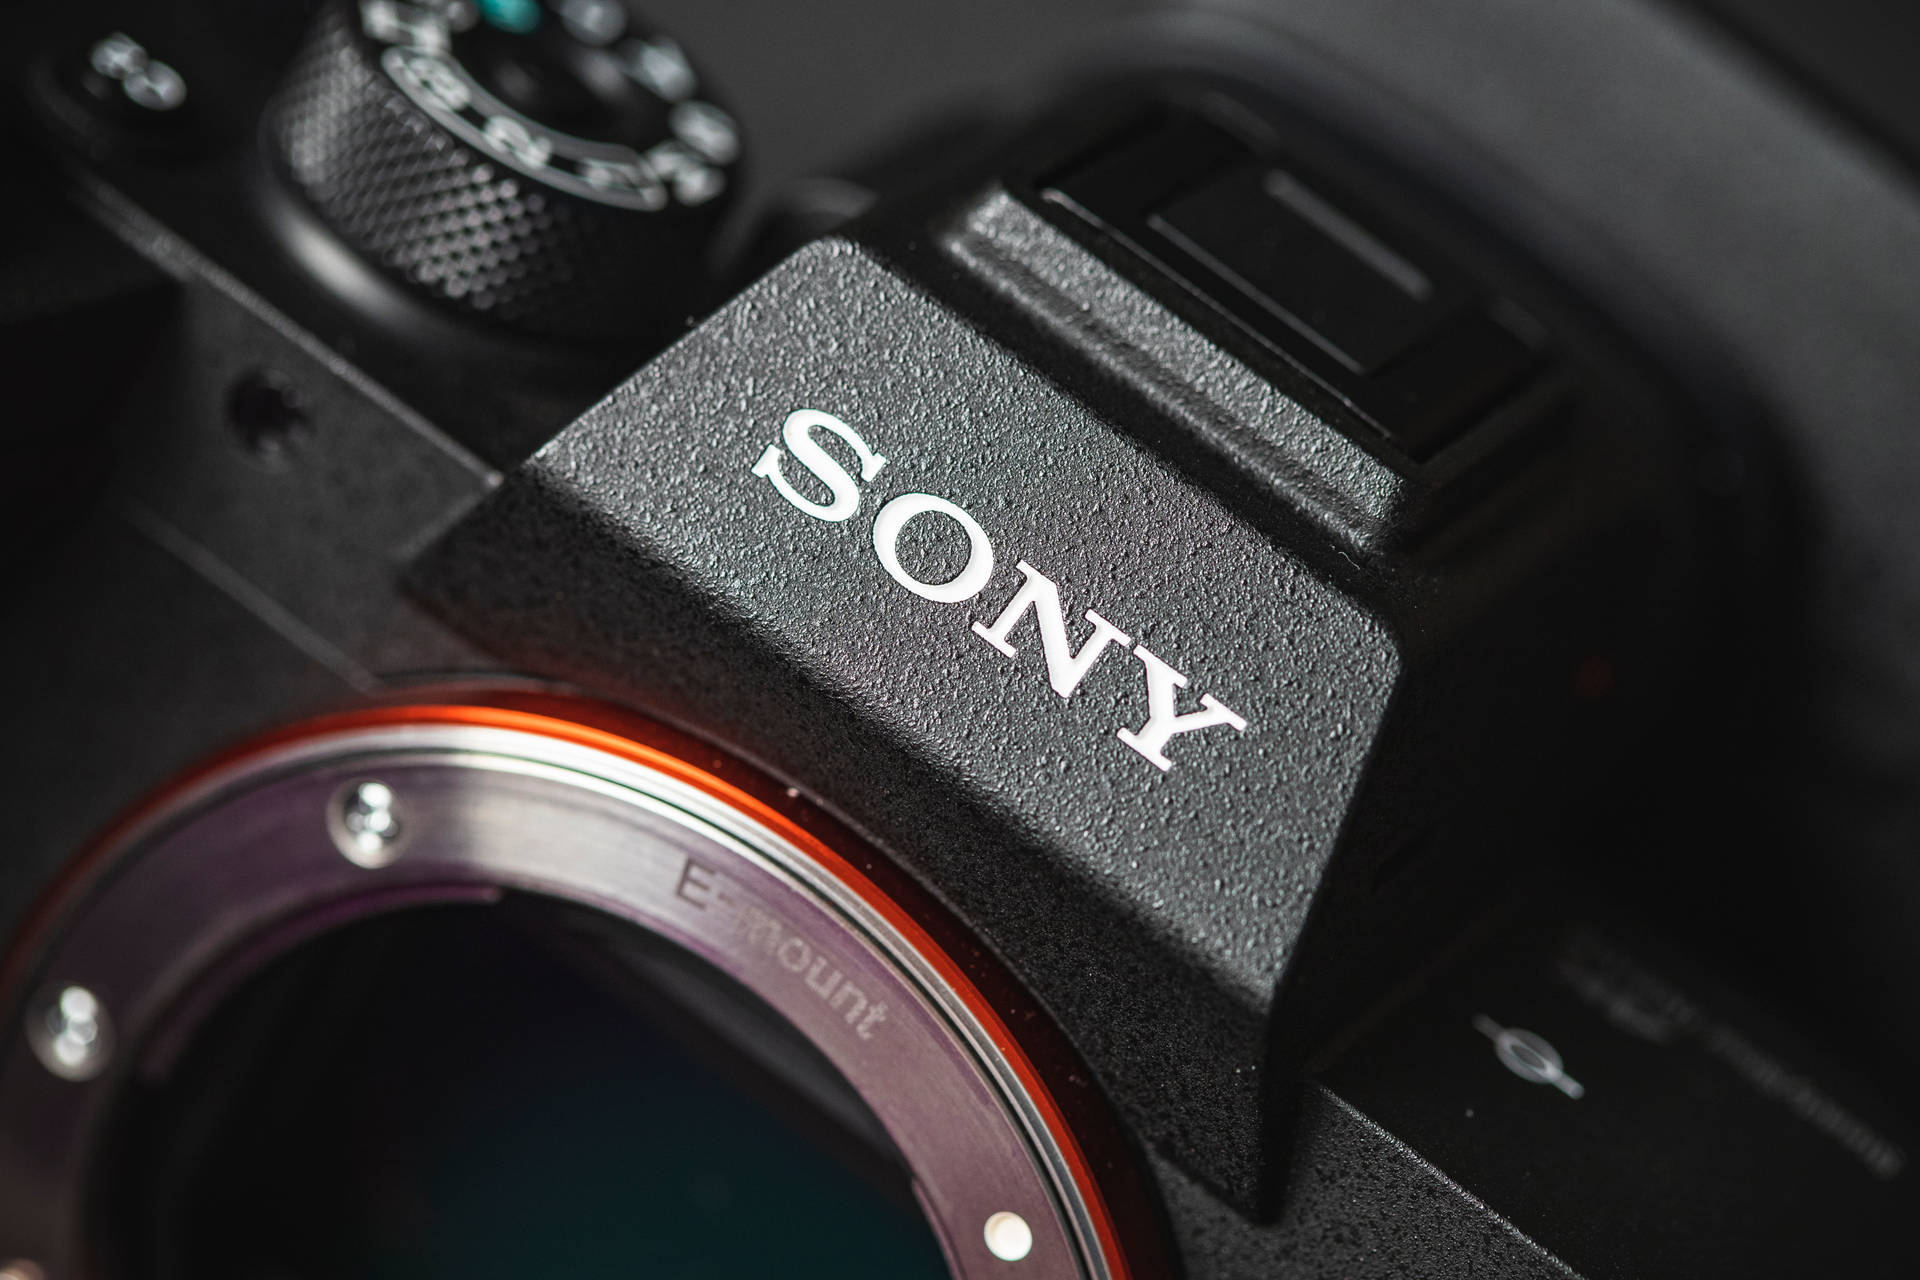 Sony Dslr Close-up